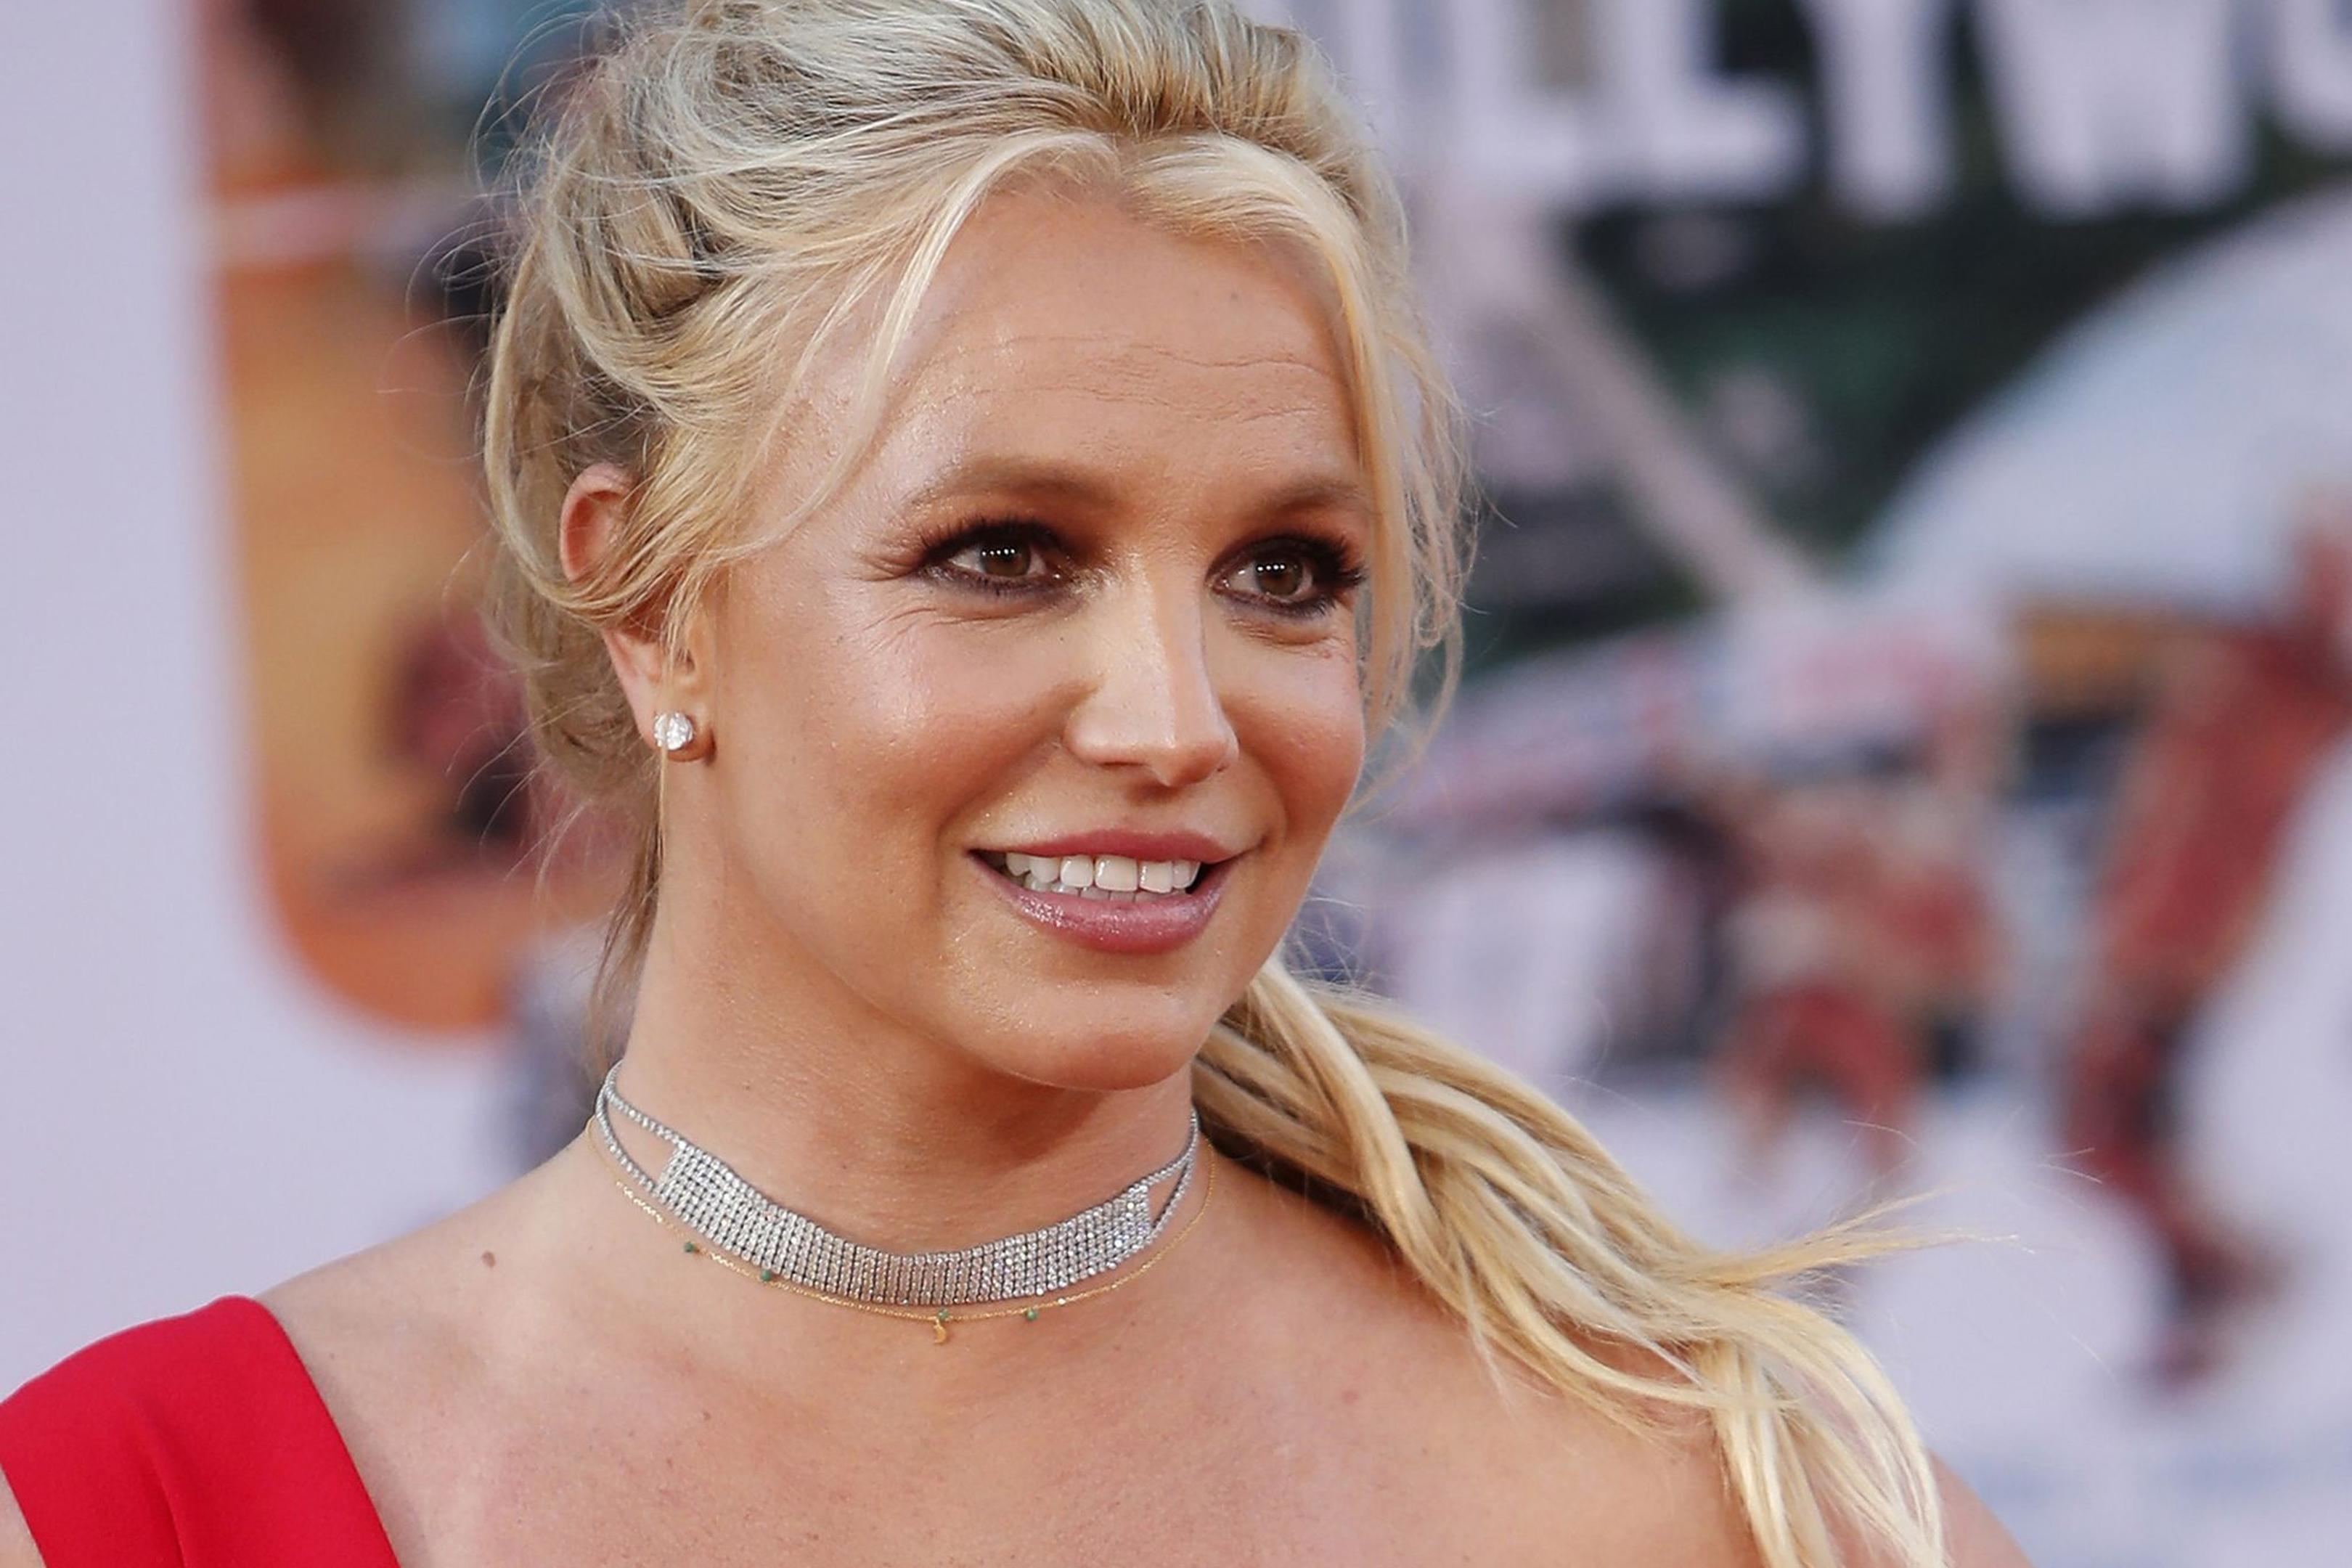 Die US-amerikanische Sängerin Britney Spears stand bis 2021 13 Jahre lang unter der Vormundschaft ihres Vaters.